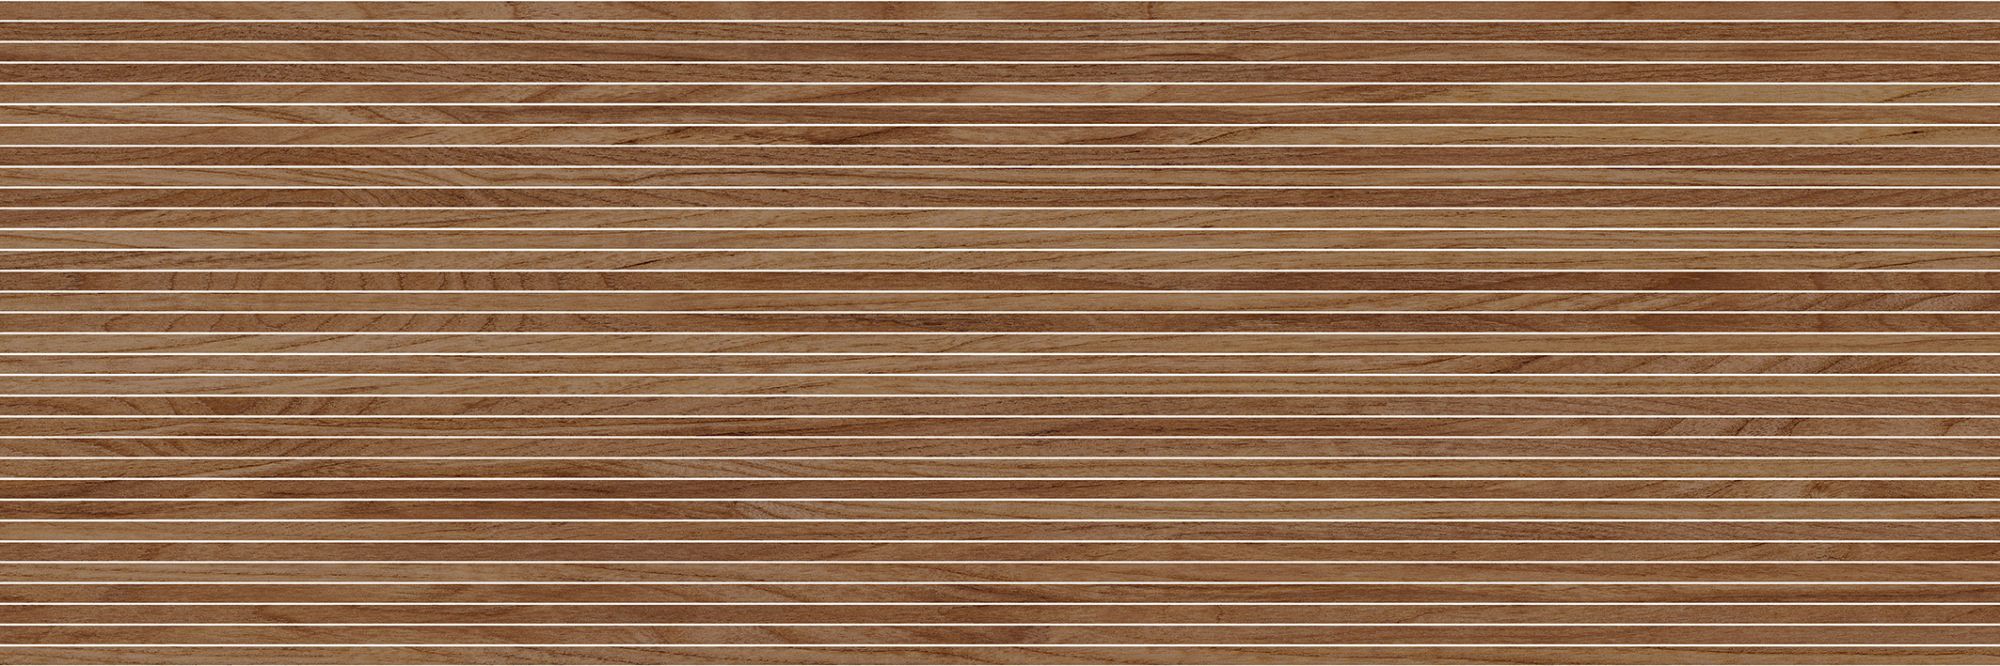 картинка Керамическая плитка Энглин 4Д 750*250 коричневый (полоски на структуре) от Керамин-Нева (керамическая плитка, керамогранит)